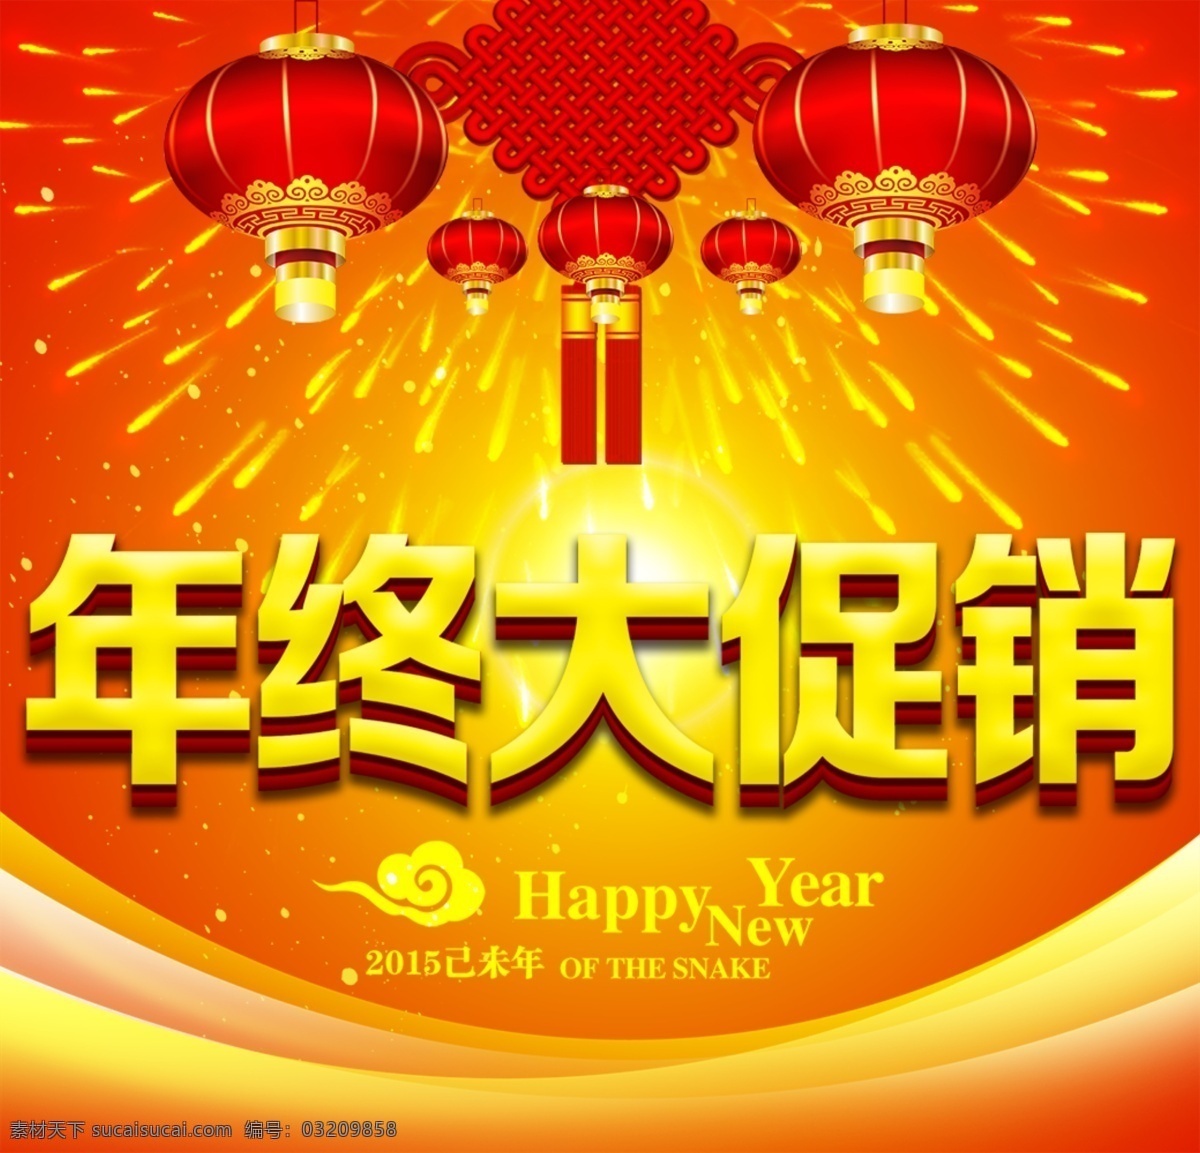 年终 大 促销 大促销 灯笼 新年快乐 中国结 psd源文件